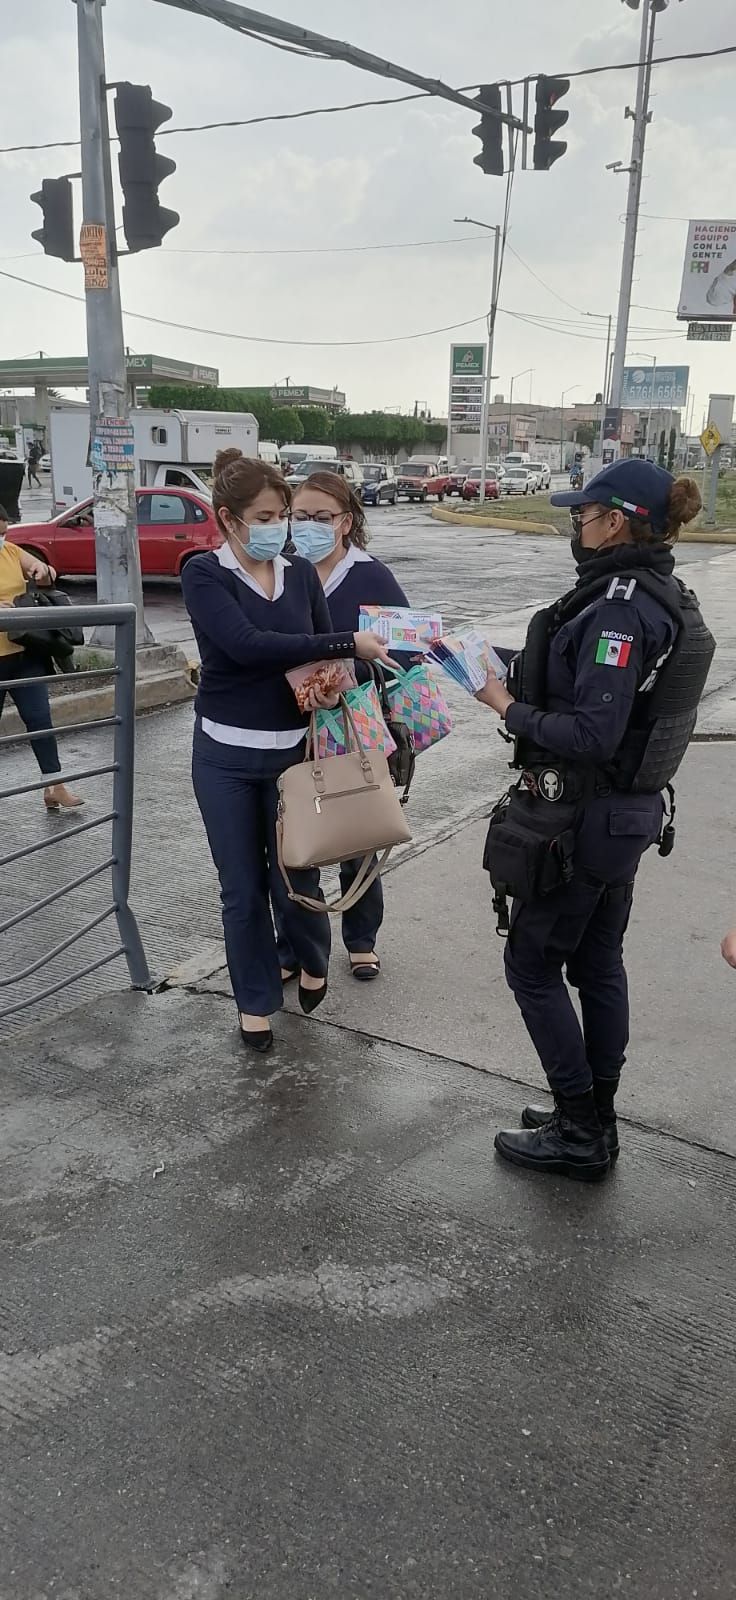 Policía de Chimalhuacán impulsa la proximidad social